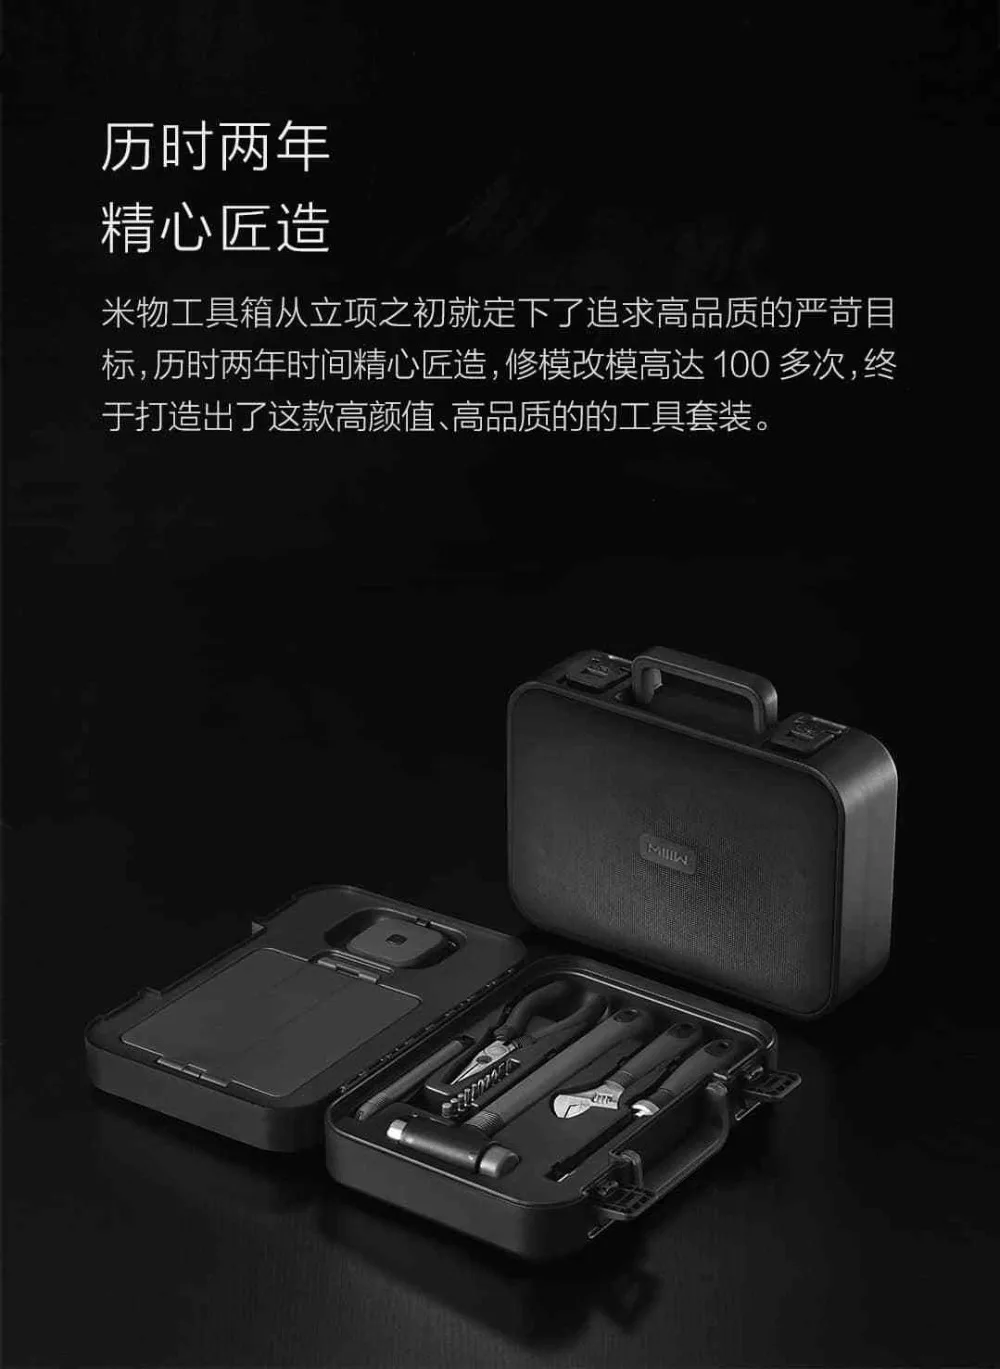 xiaomi mijia rice toolbox 6 plus 2 для инструментов внутри части коробка для хранения умный дом ящик для инструментов